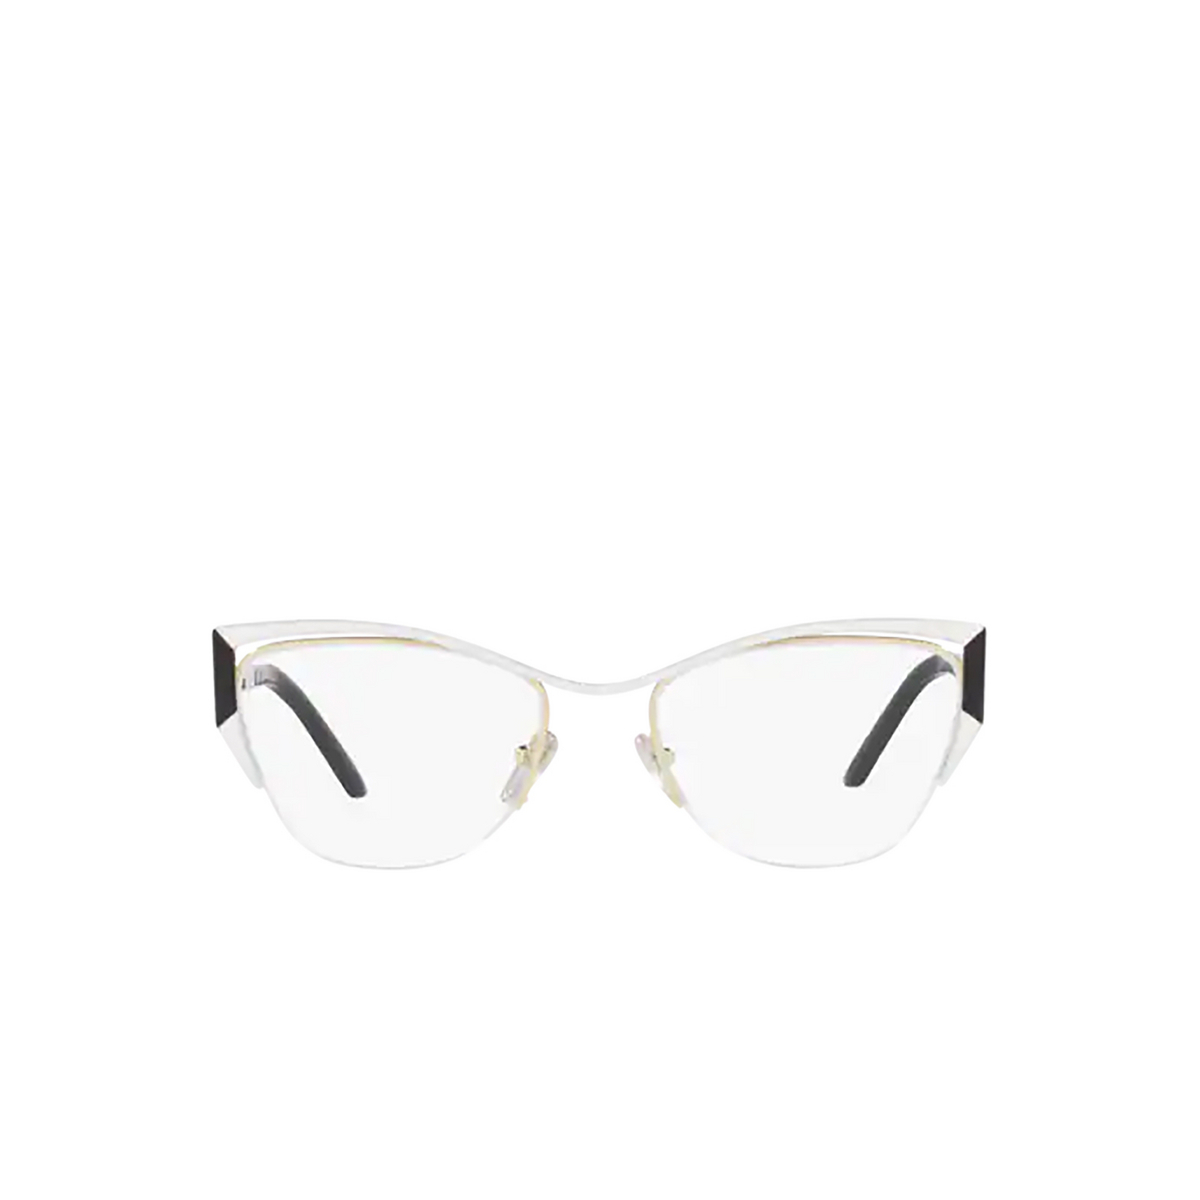 Prada PR 63YV Eyeglasses 11A1O1 Talc / Black/ Pale Gold - front view